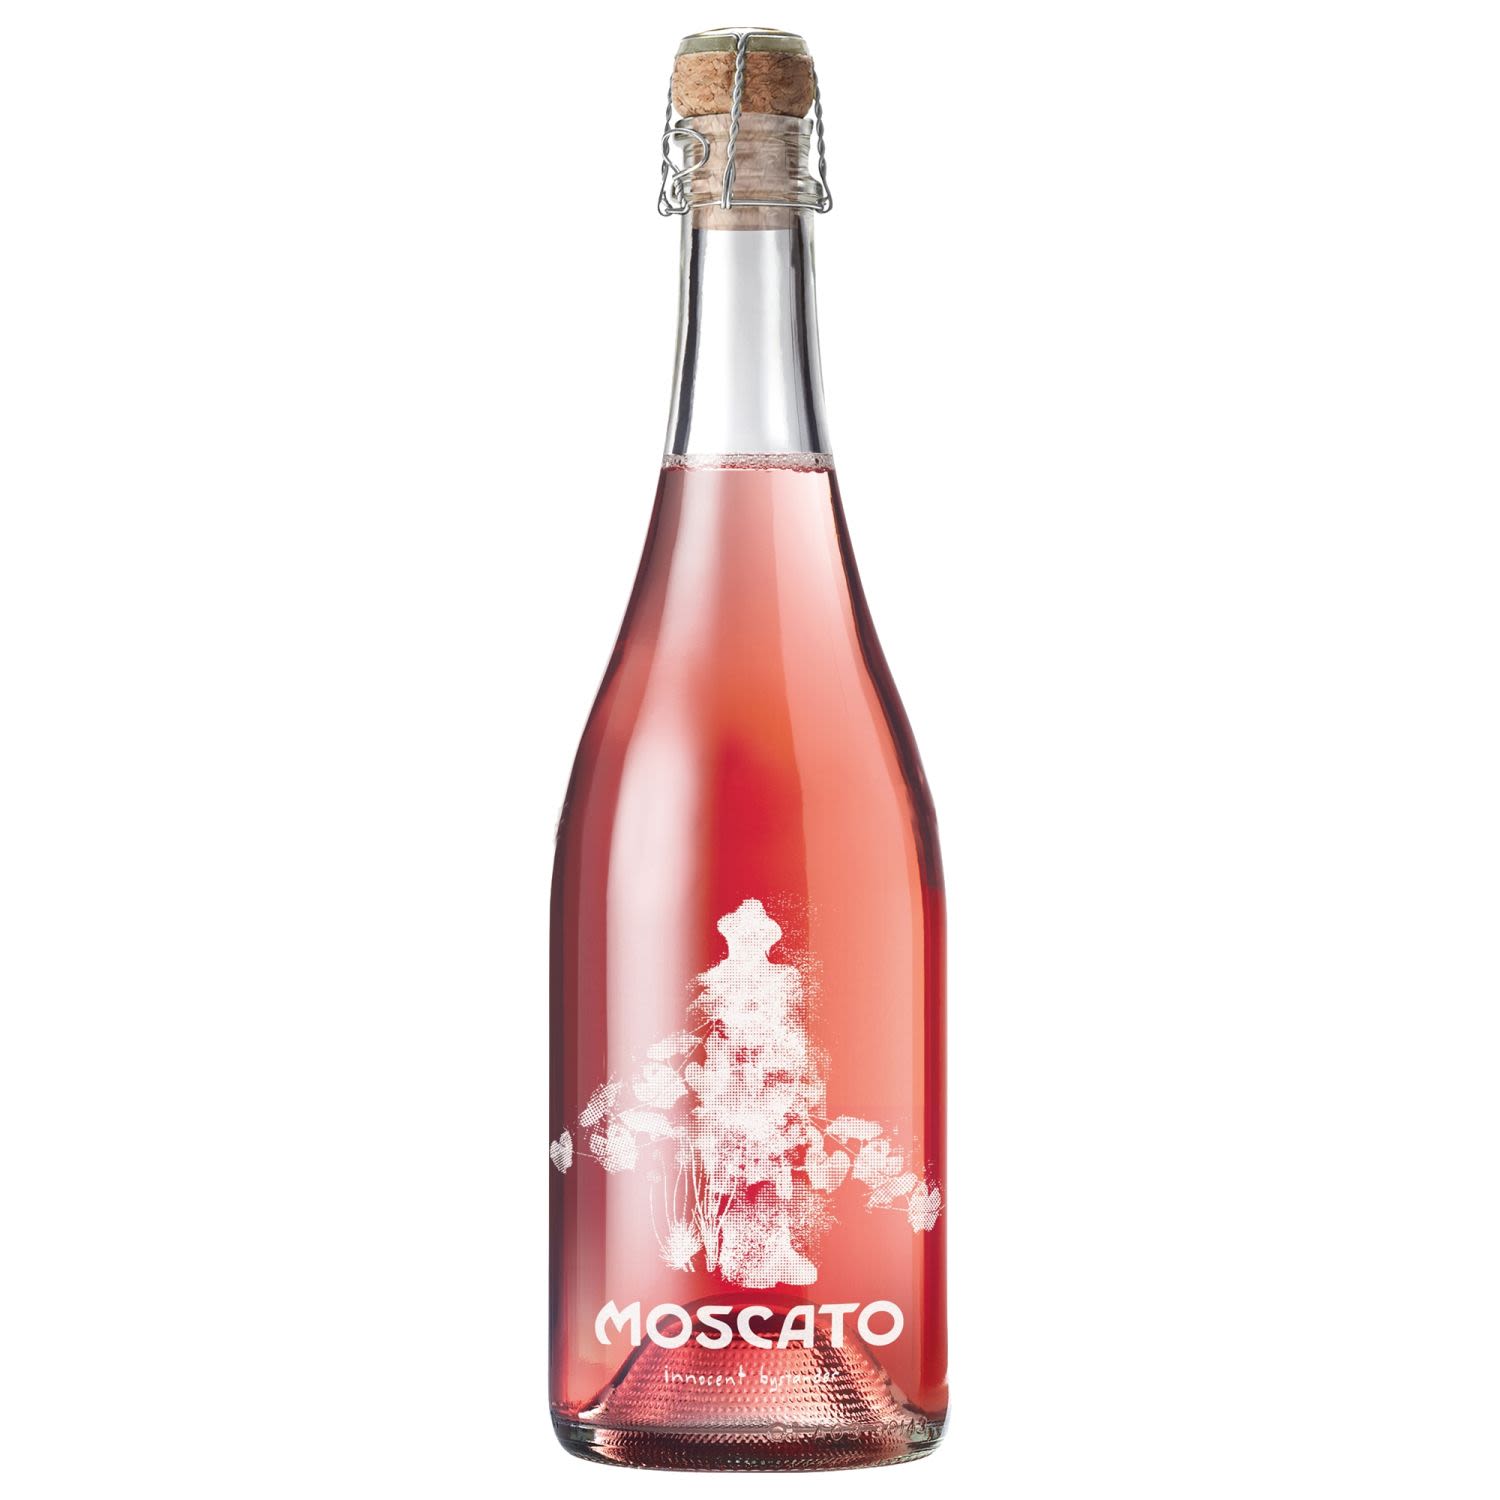 Innocent Bystander Pink Moscato<br /> <br />Alcohol Volume: 5.50%<br /><br />Pack Format: Bottle<br /><br />Standard Drinks: 3.3</br /><br />Pack Type: Bottle<br /><br />Country of Origin: Australia<br /><br />Region: n/a<br /><br />Vintage: '2018<br />